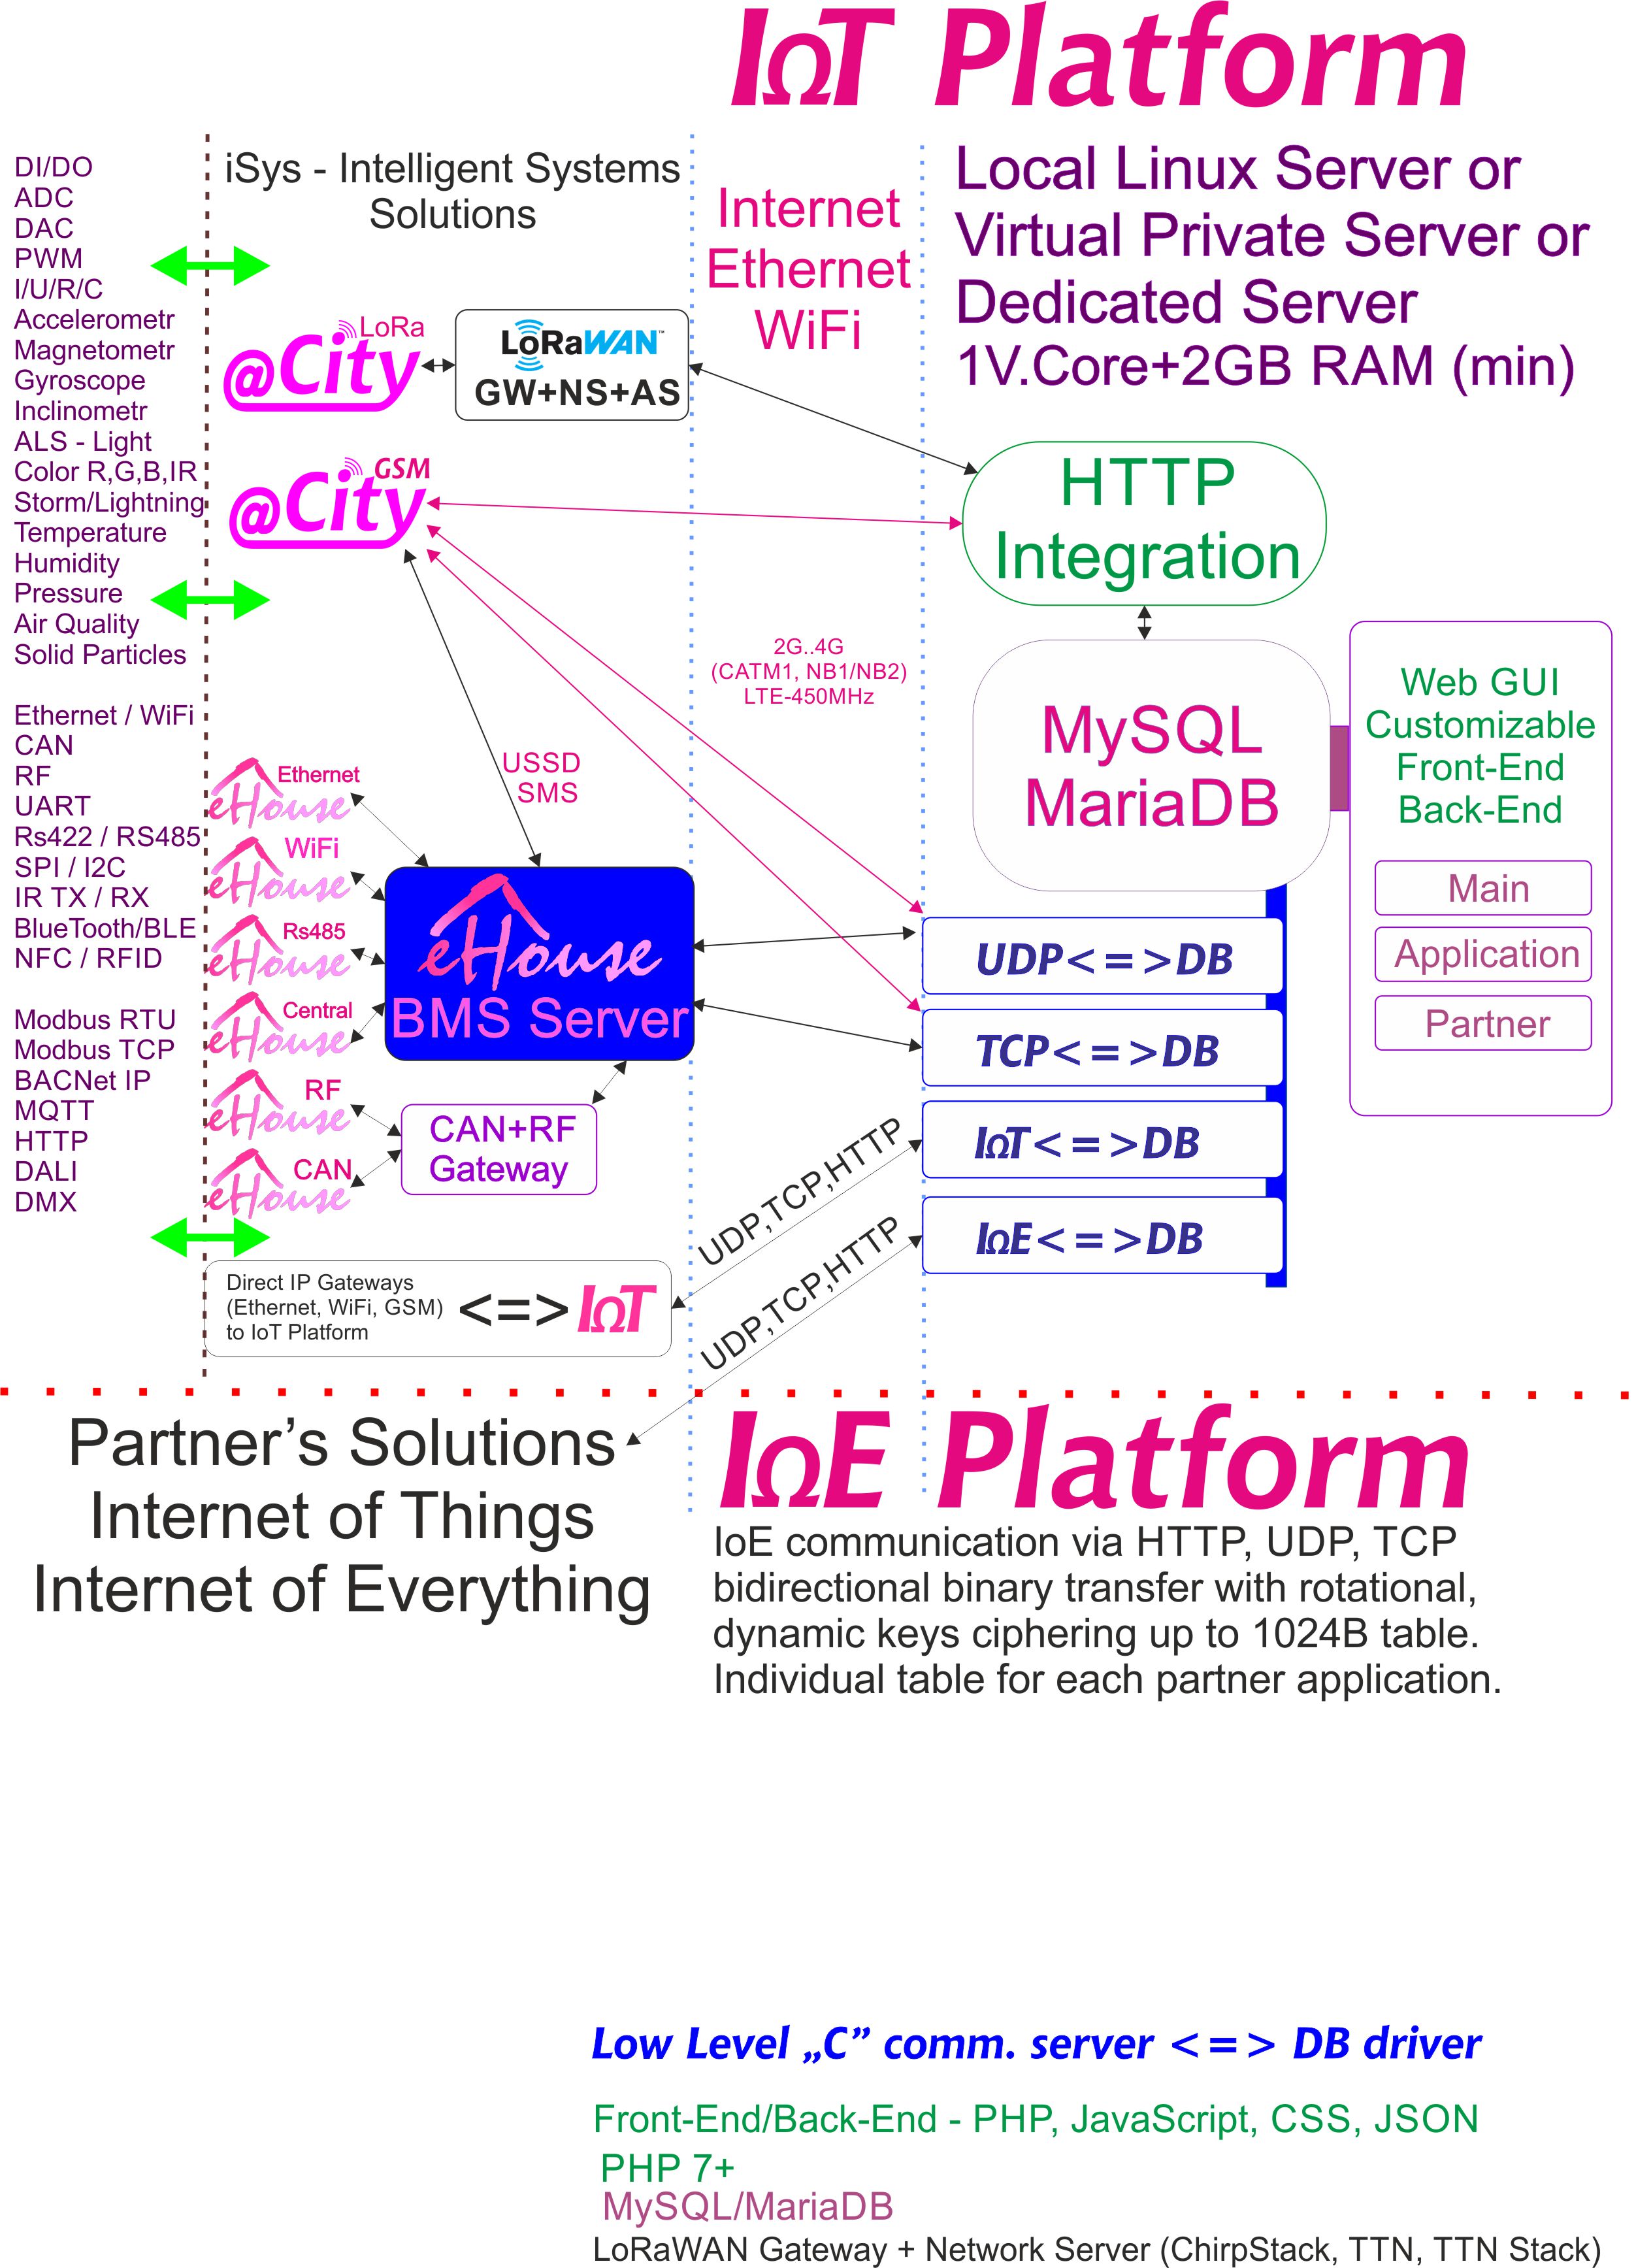 IoE, IoT Platform เฉพาะสำหรับคู่ค้าแต่ละรายที่มีการเข้ารหัสส่วนบุคคล